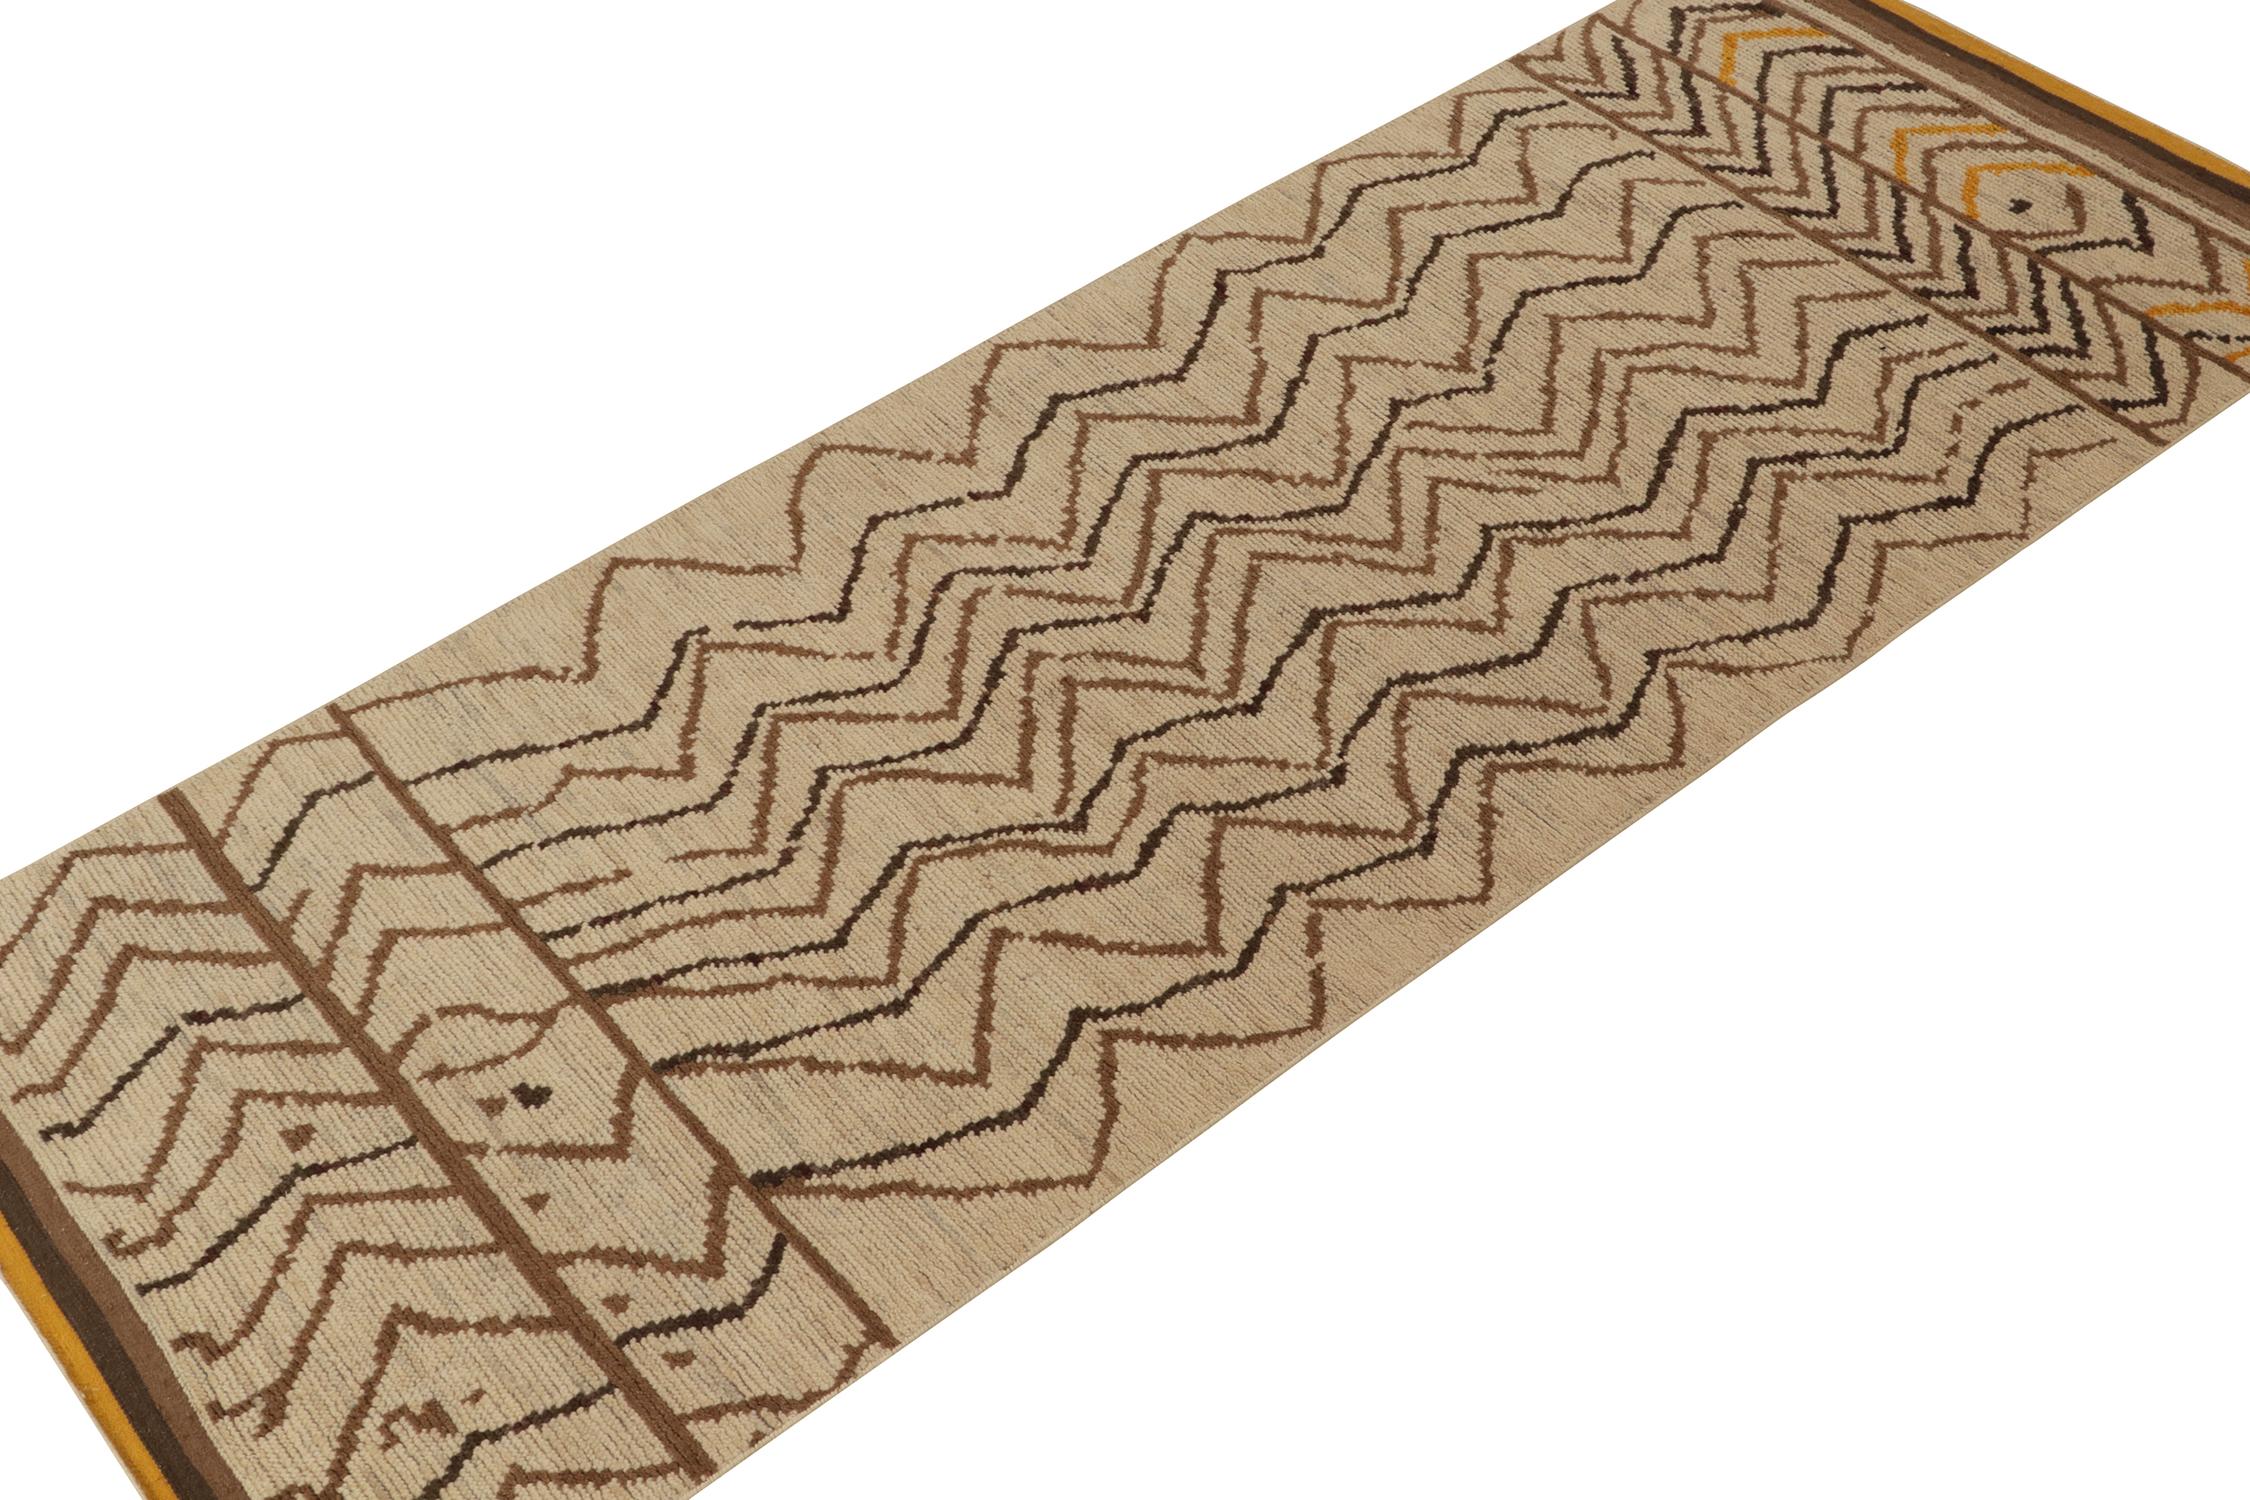 Ce tapis contemporain de 4x10 est le dernier-né de la nouvelle Collection Marocaine de Rug & Kilim - une interprétation audacieuse de ce style emblématique. Noué à la main dans un mélange de laine, de soie et de coton.

Plus d'informations sur le